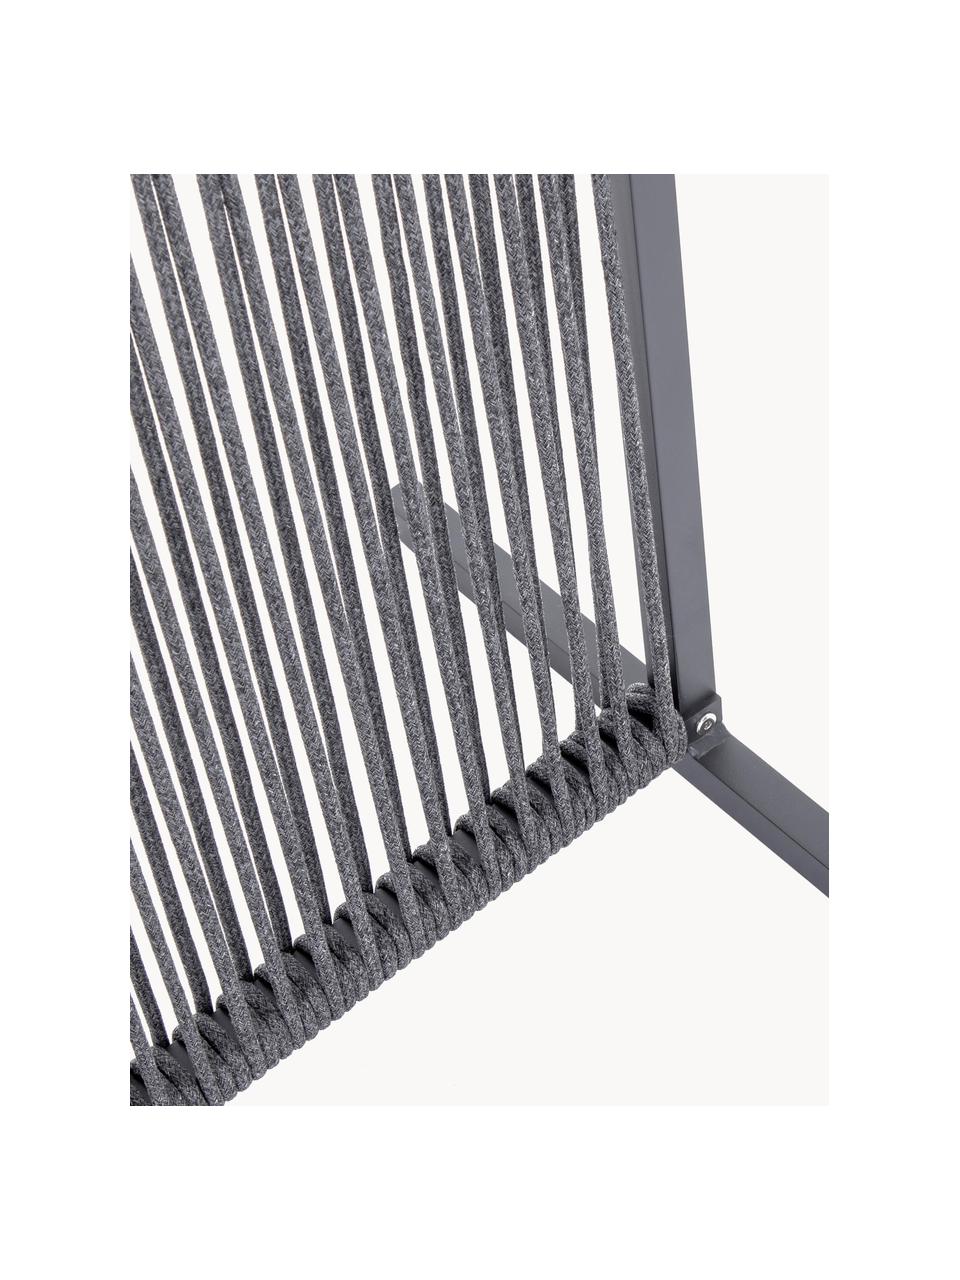 Biombo Paxson, An 180 cm, Estructura: aluminio con pintura en p, Gris oscuro, An 120 x Al 180 cm